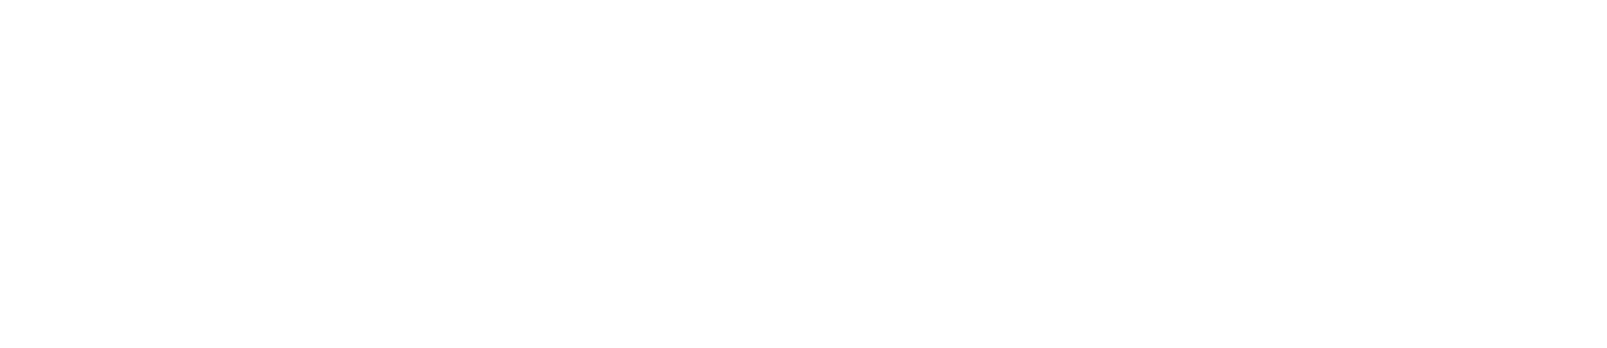 Citycon logo grand pour les fonds sombres (PNG transparent)